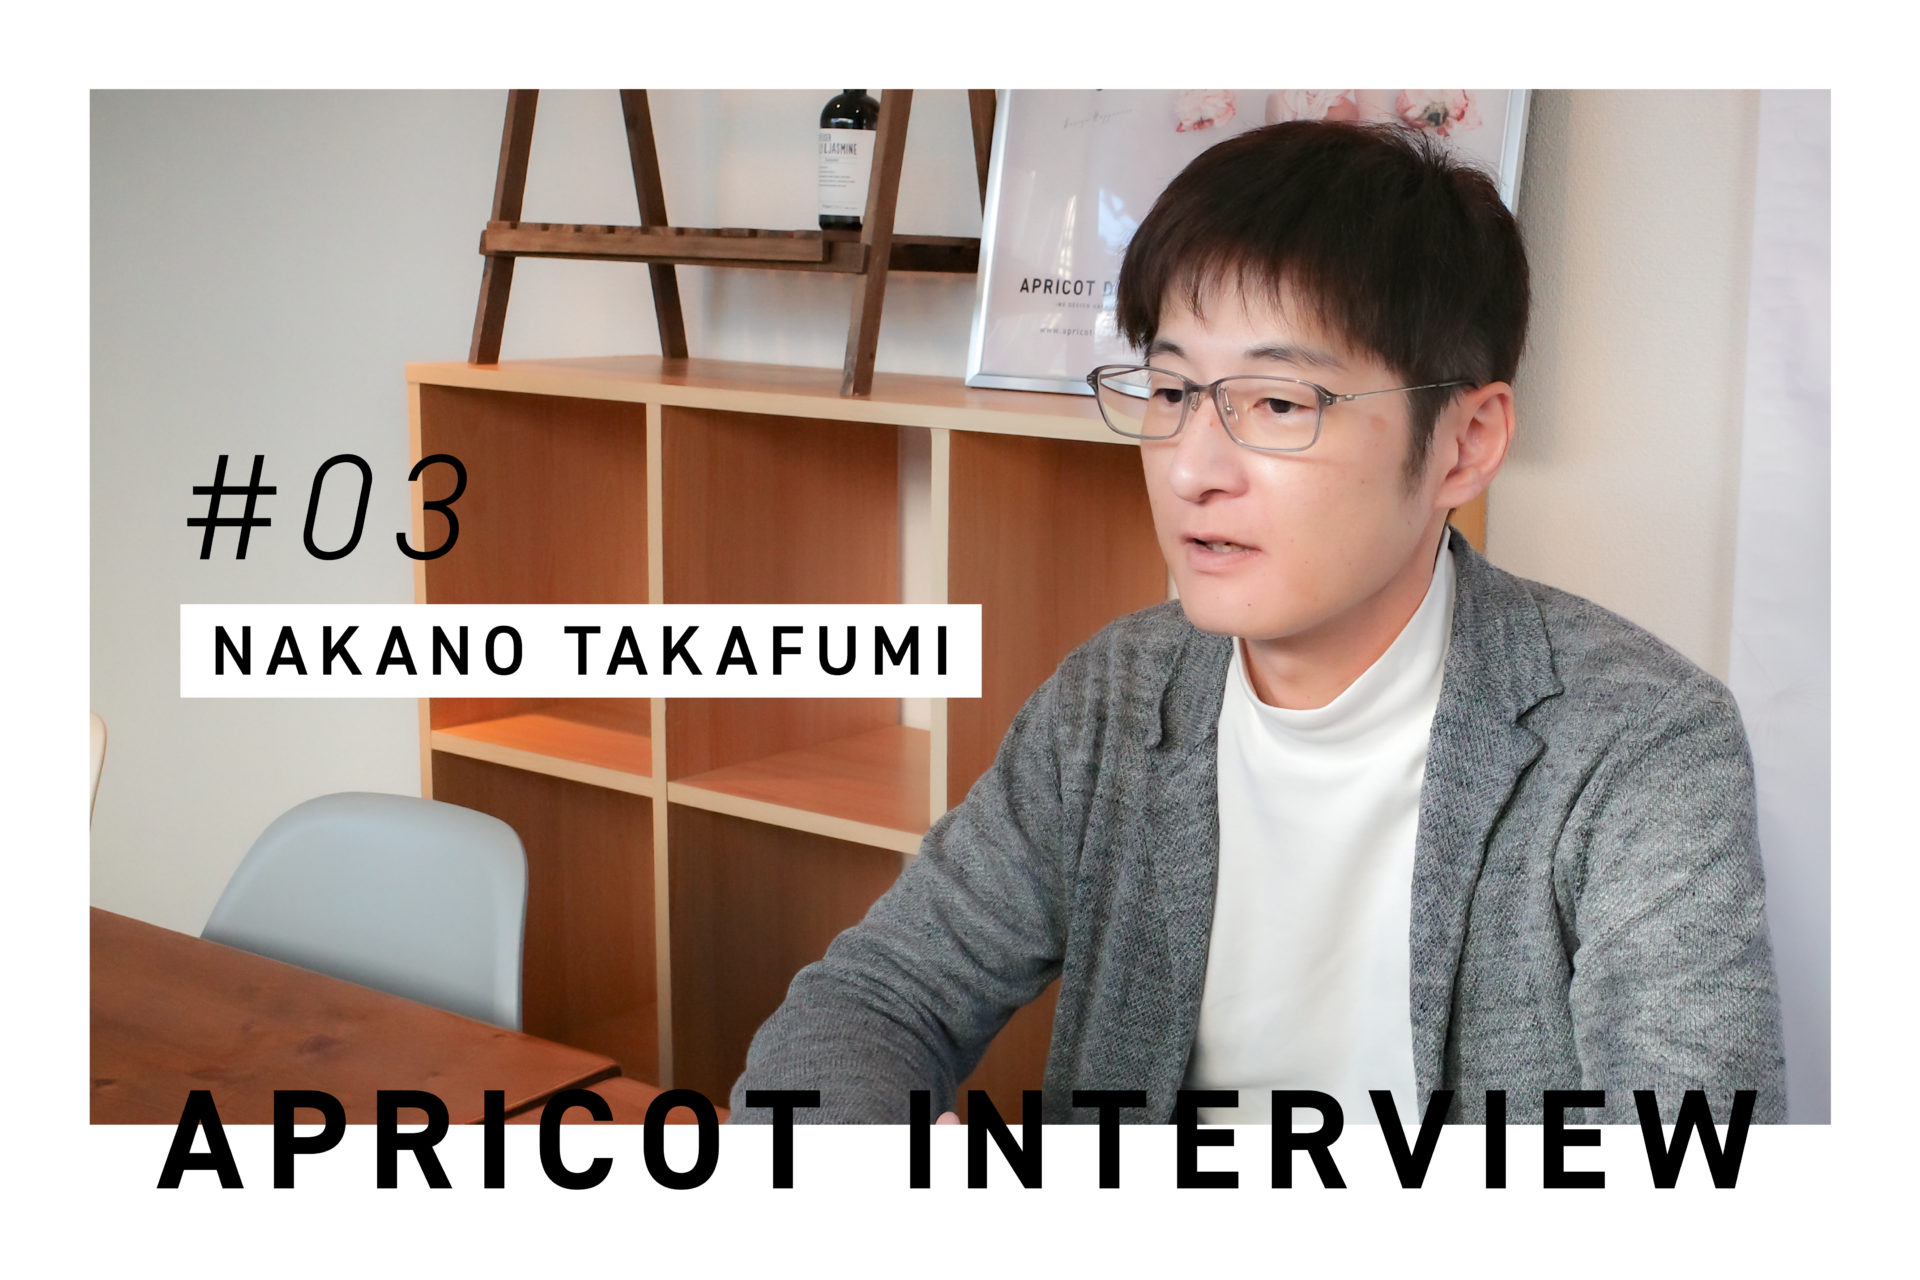 #03  APRICOT INTERVIEW  byNakano Takafumi